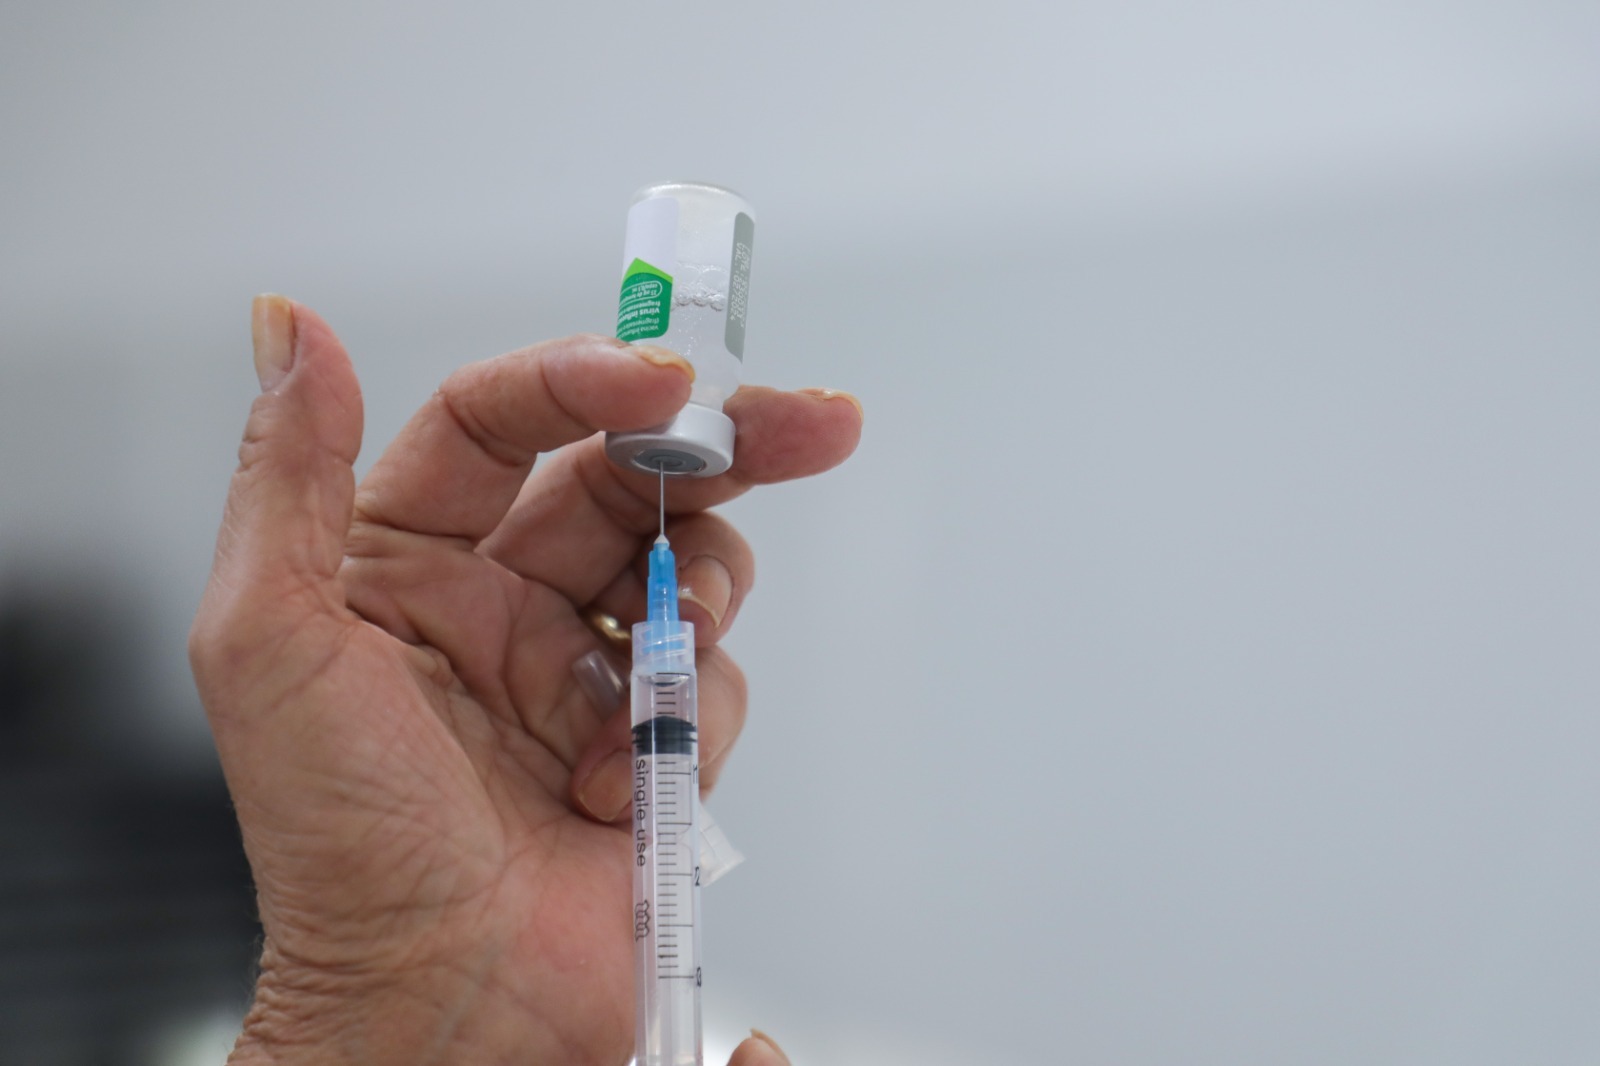 Vacina da gripe protege contra três cepas: H1N1, H3N2 e vírus influenza B